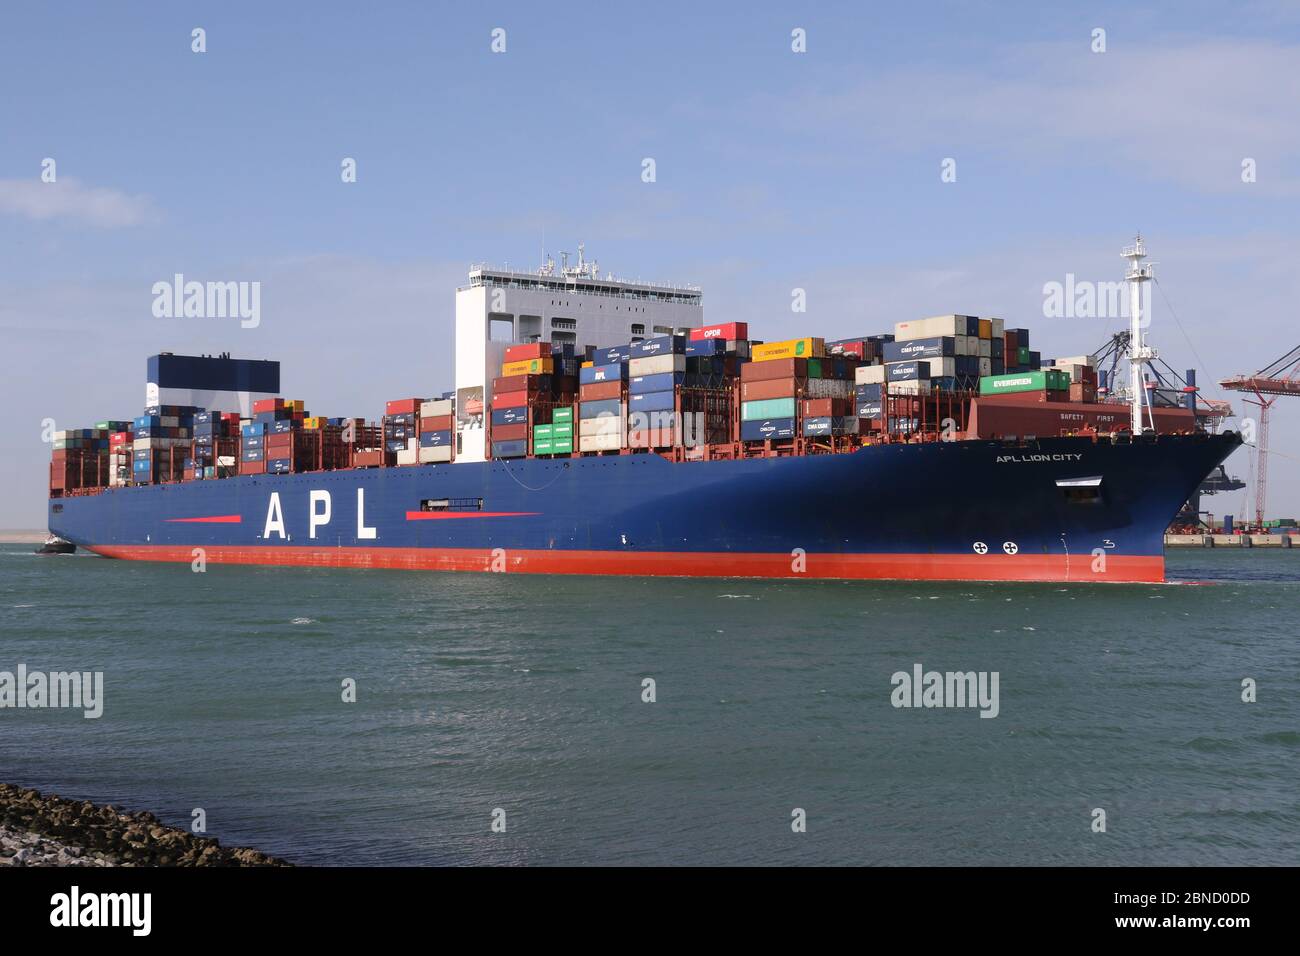 La nave-container APL Lion City lascerà il porto di Rotterdam il 12 marzo 2020. Foto Stock